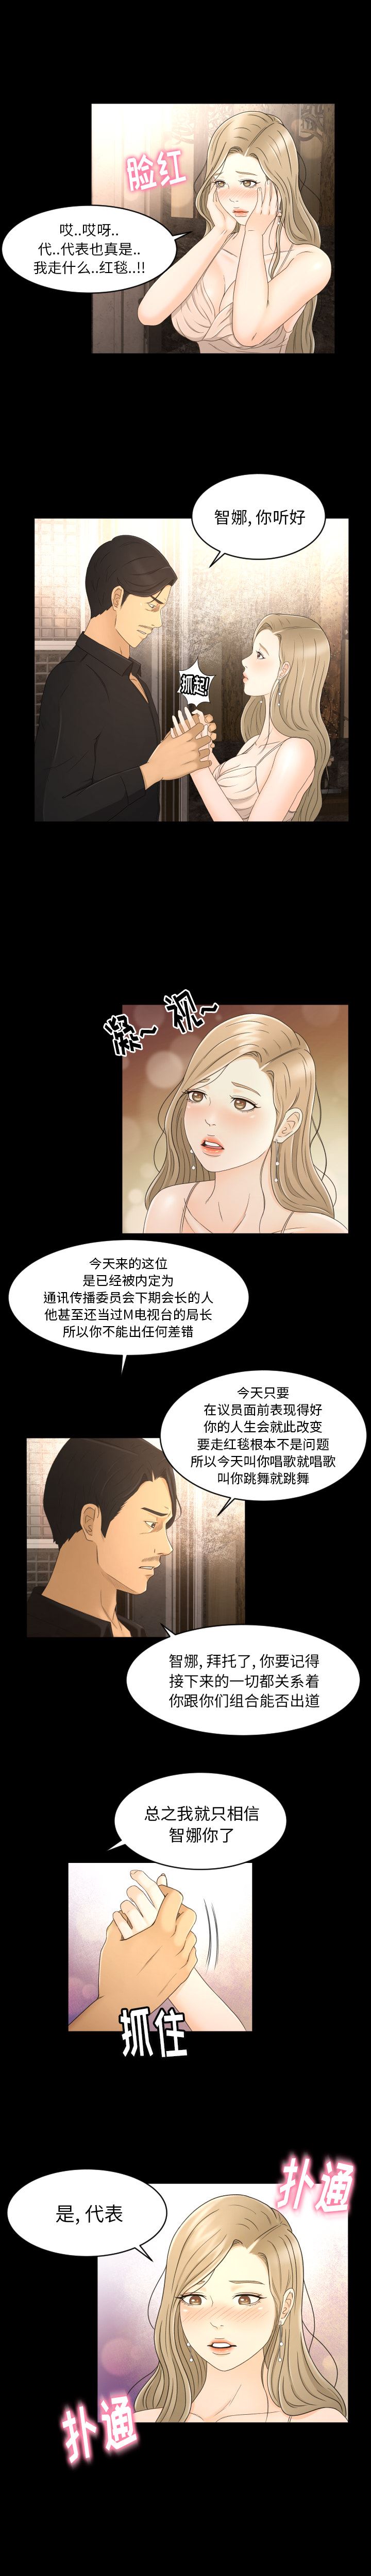 韩国污漫画 專屬契約 8 5